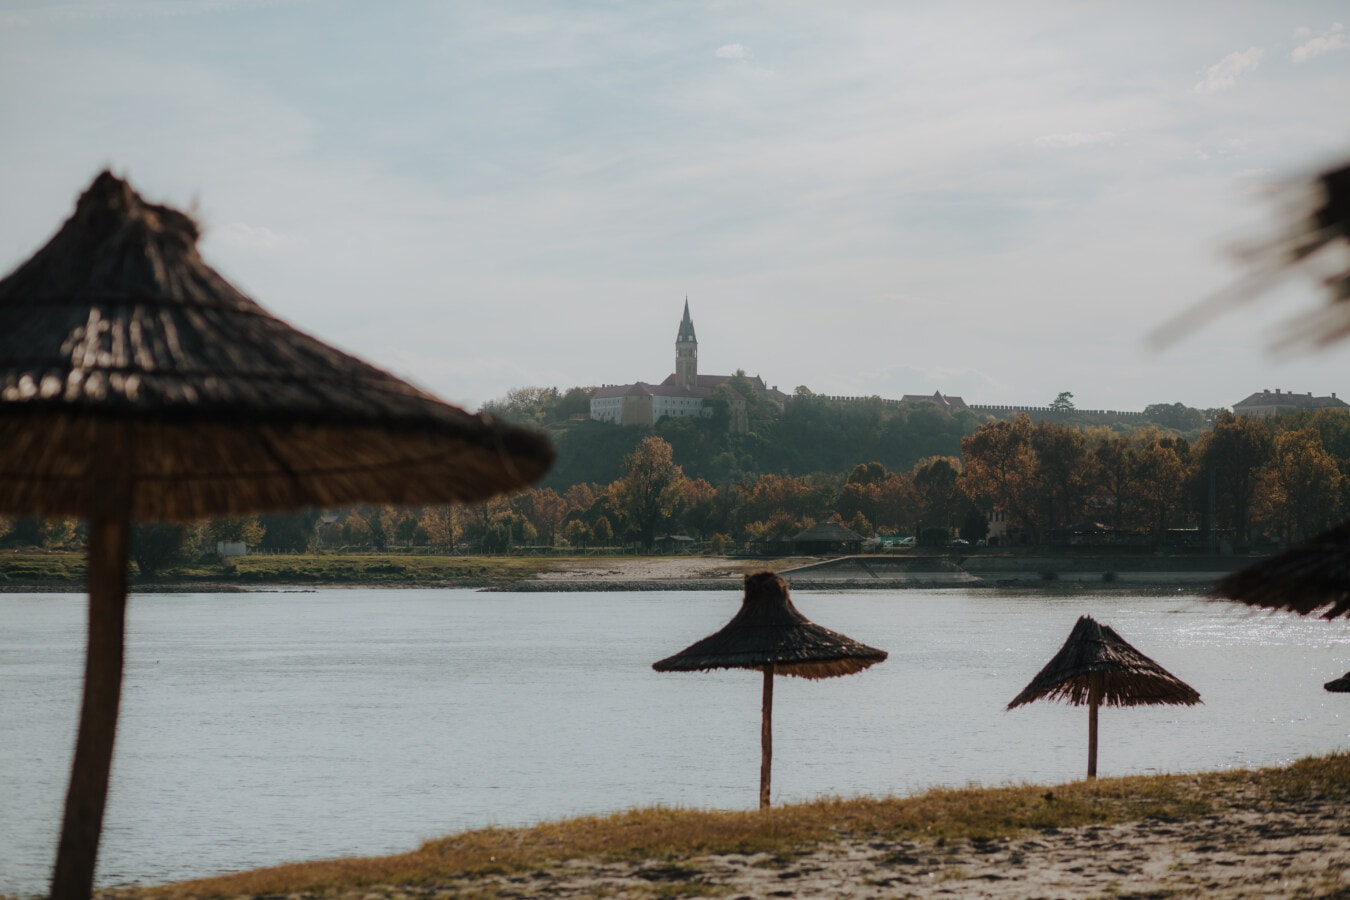 strand, Rivier de Donau, rivier, oever van de rivier, parasol, herfst seizoen, landschap, vredevol, water, boom